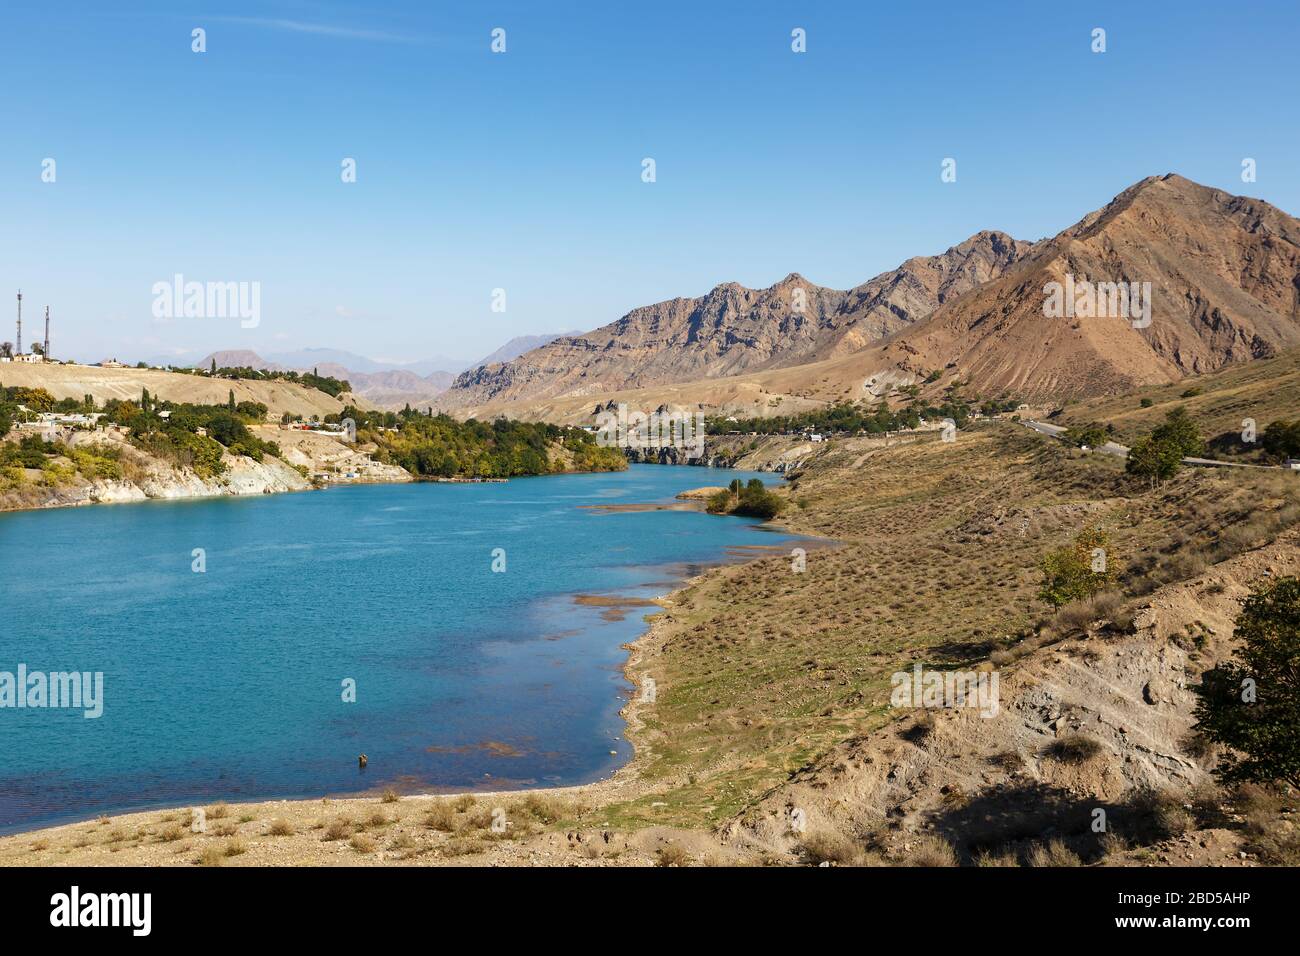 Naryn River près de la ville de Tash-Kumyr dans la région de Jalal-Abad au Kirghizstan. Banque D'Images